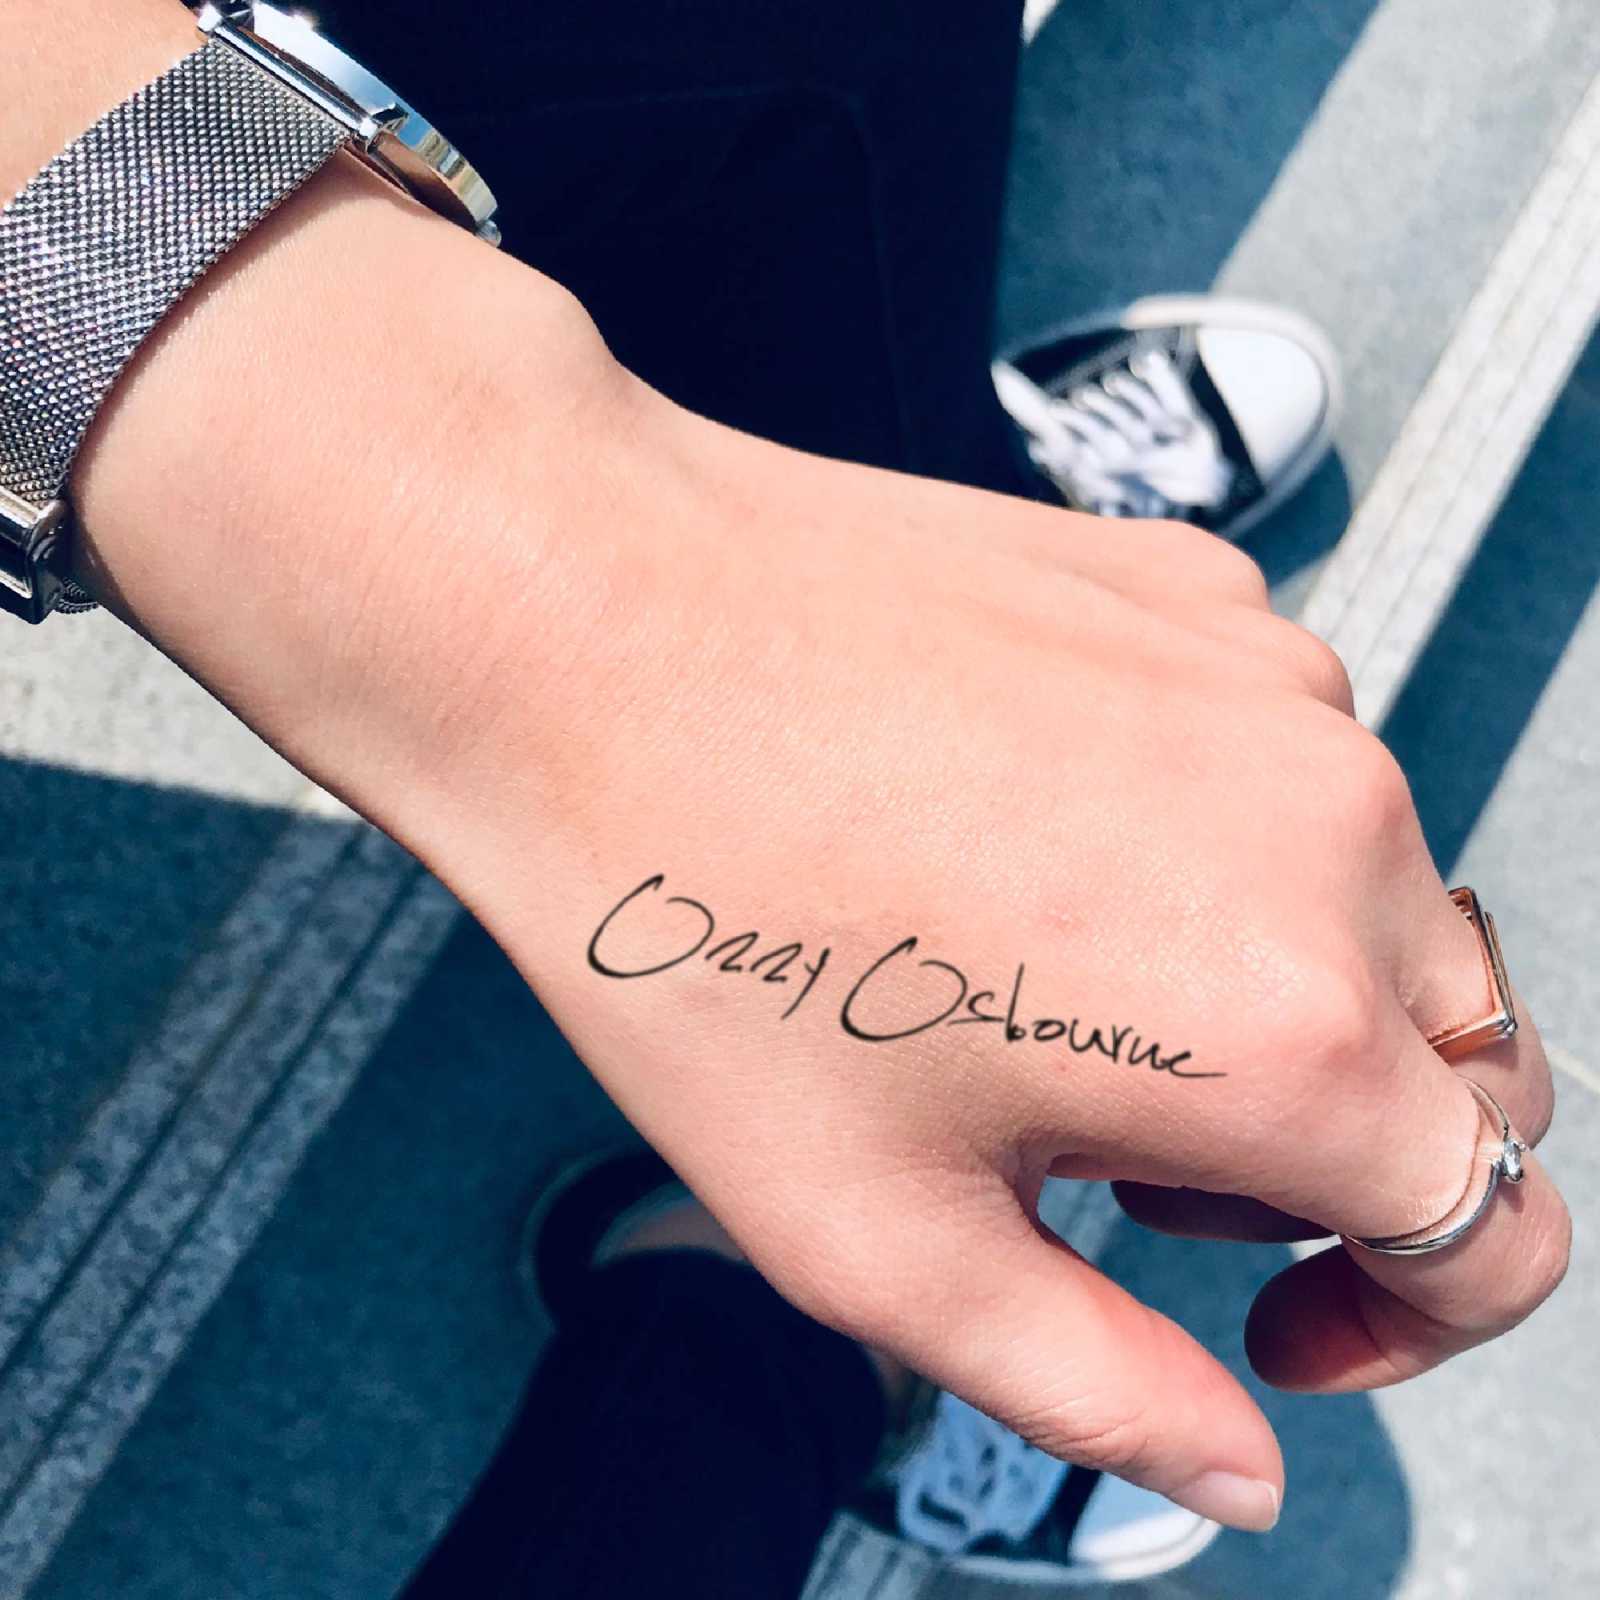 Ozzy Osbourne Tattoo Design Idea - OhMyTat